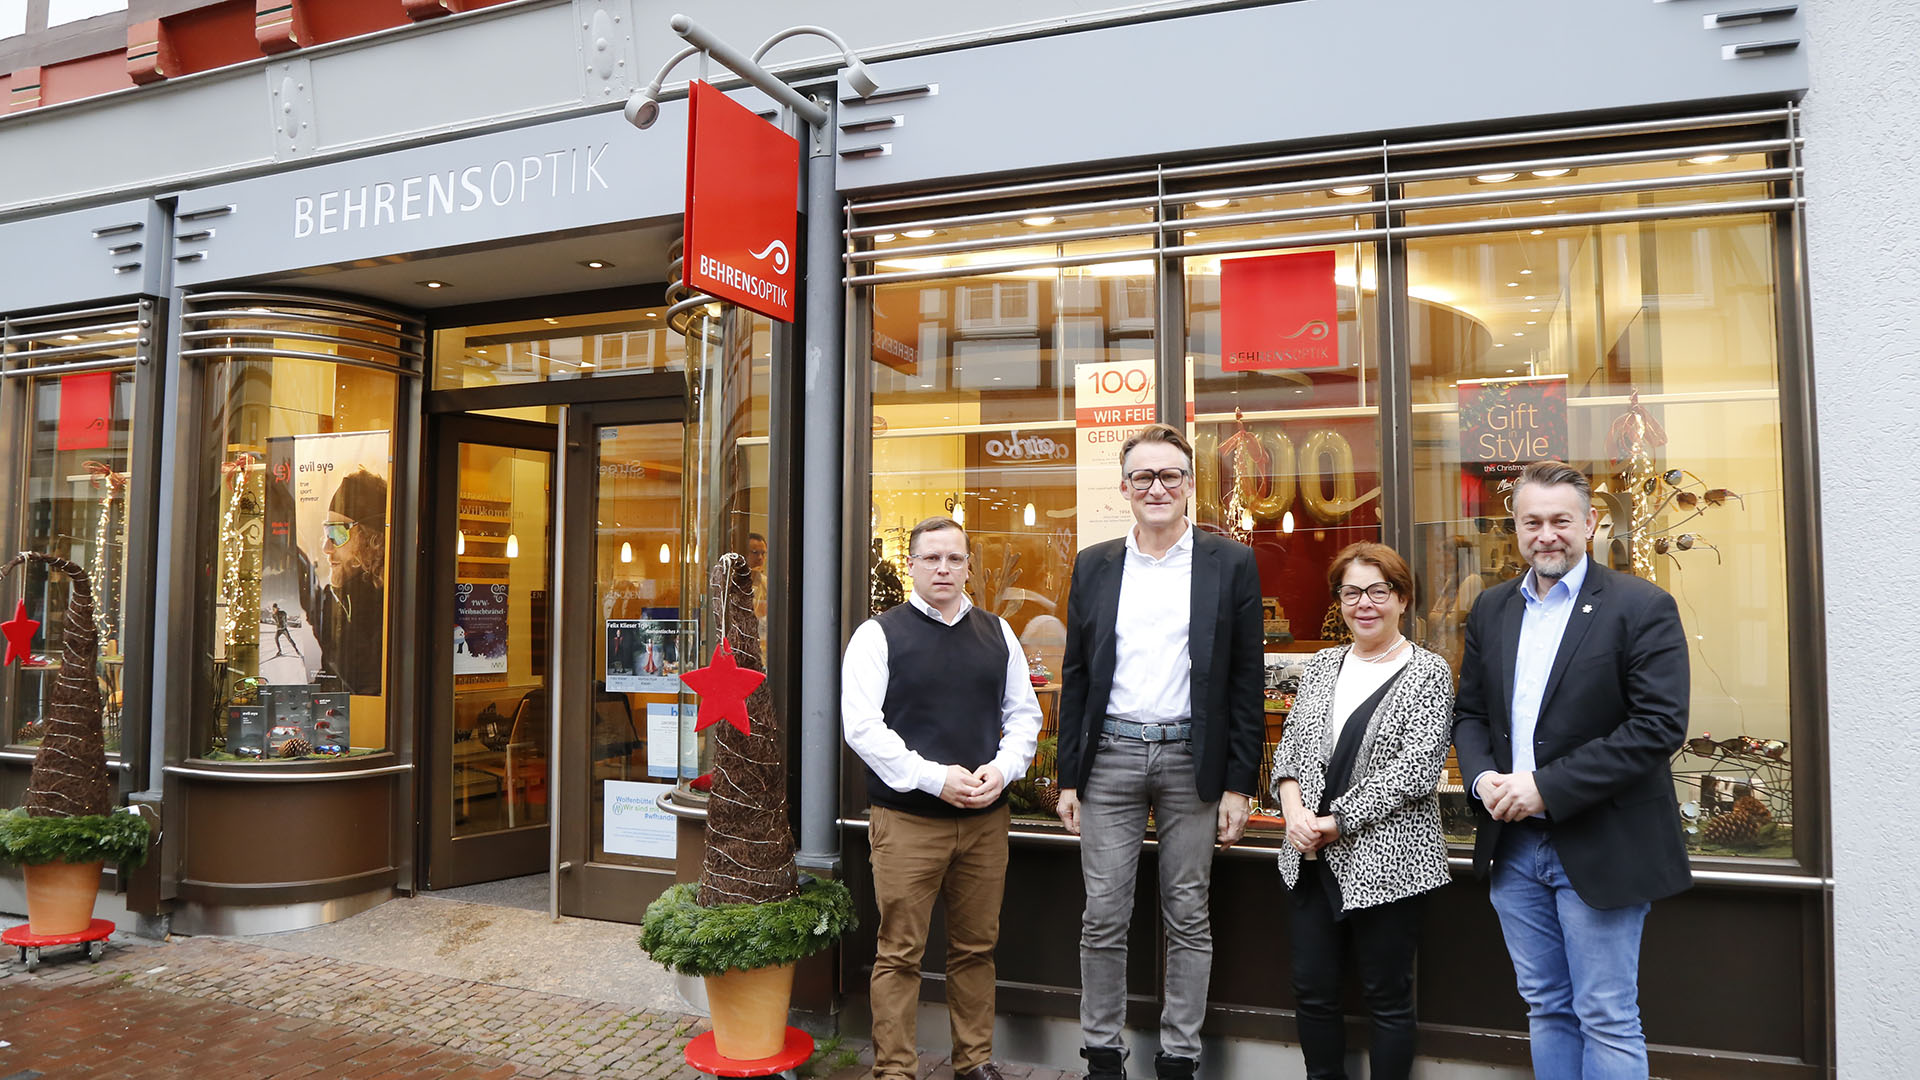 Drei Männer und eine Frau stehen zum Gruppenfoto vor dem Ladenlokal von Behrens-Optik